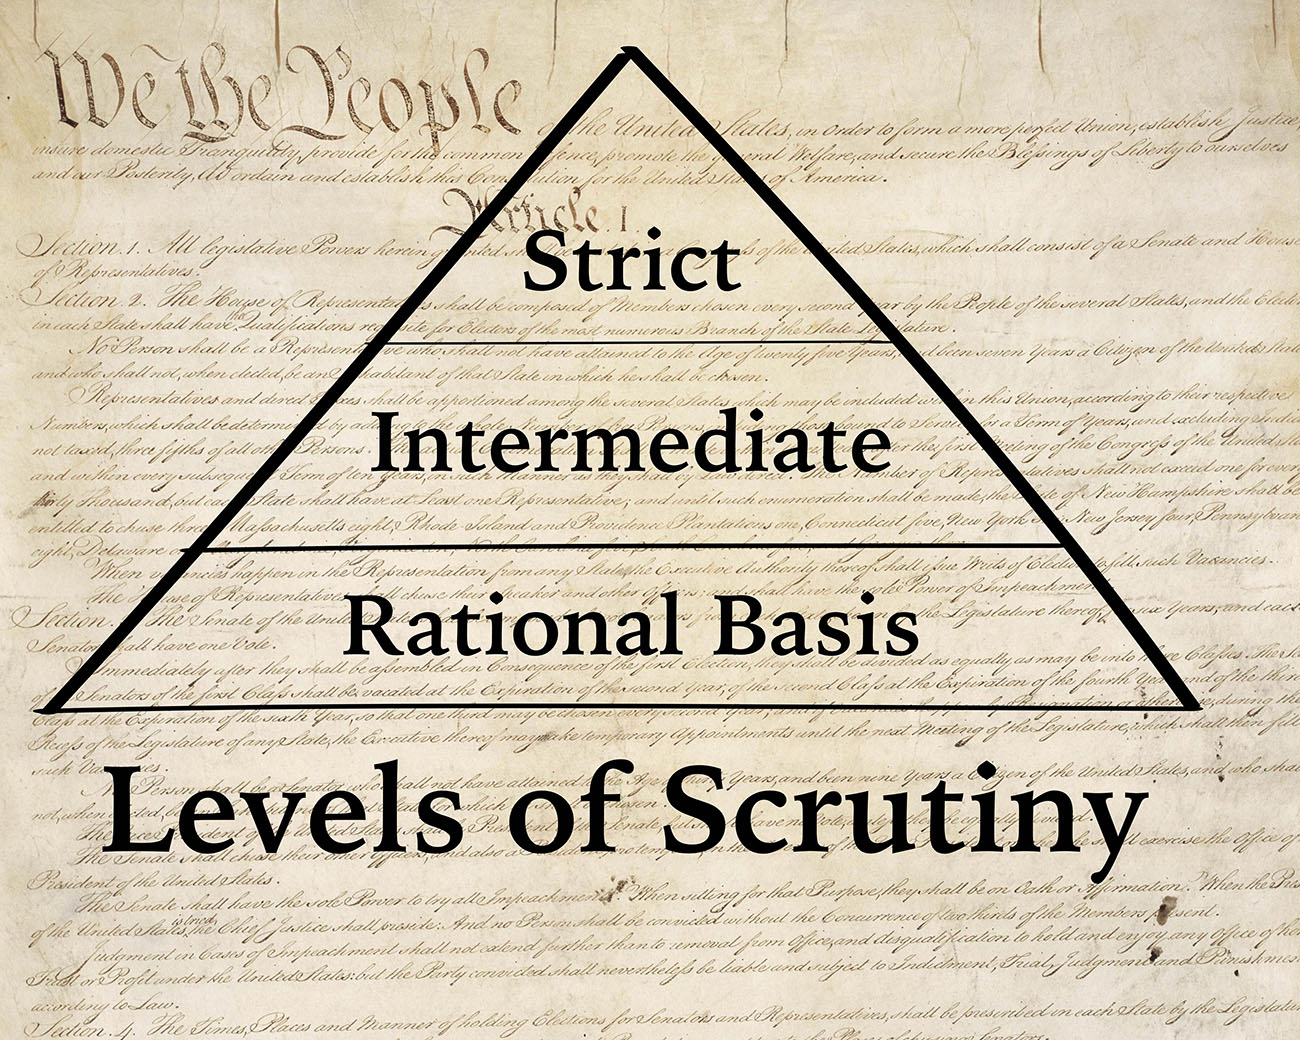 3 levels of scrutiny